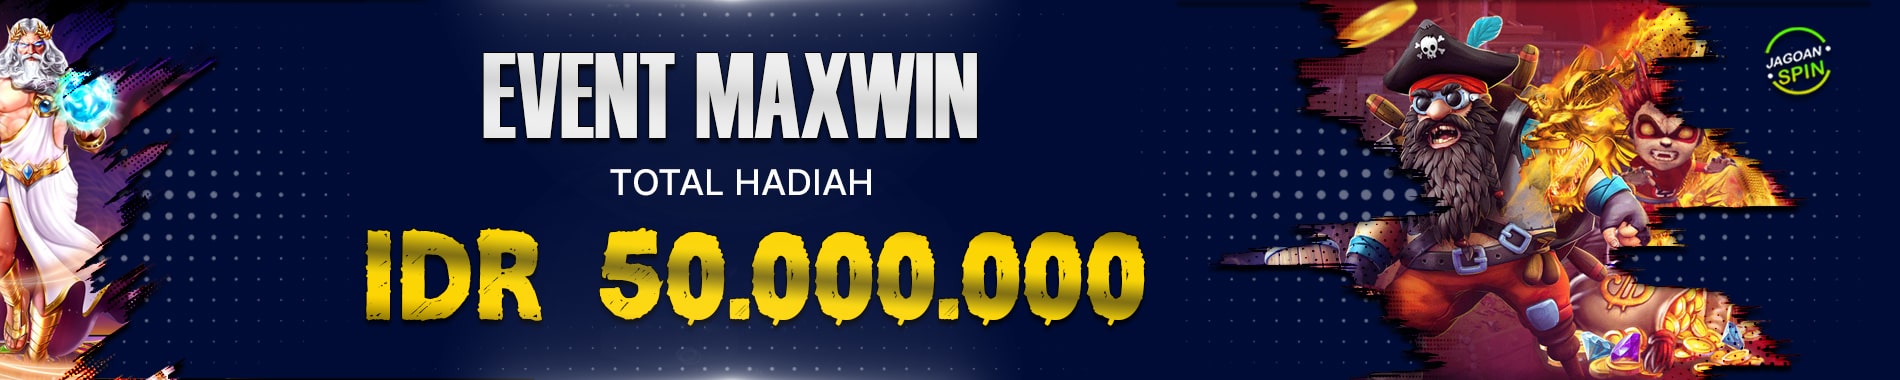 Event Maxwin Totah Hadiah IDR 50.000.000